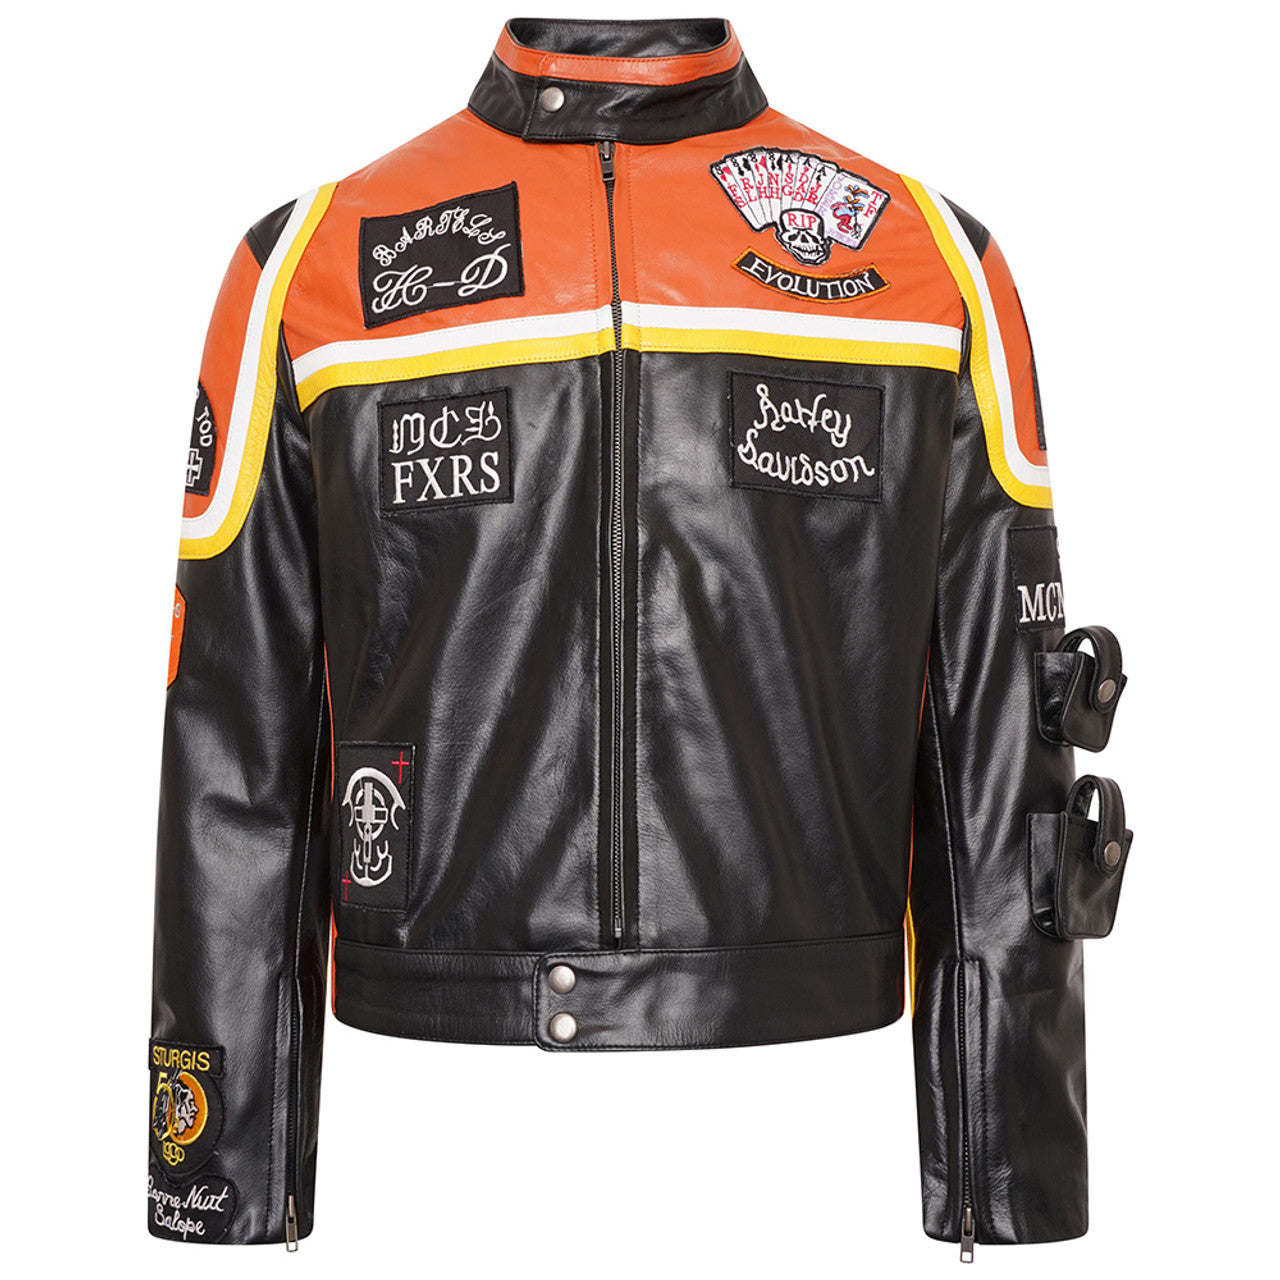 Harley Davidson biker leather jacket men's riding jacket black leather jacket men designer jacket men's fashion black Biker leather jacket 